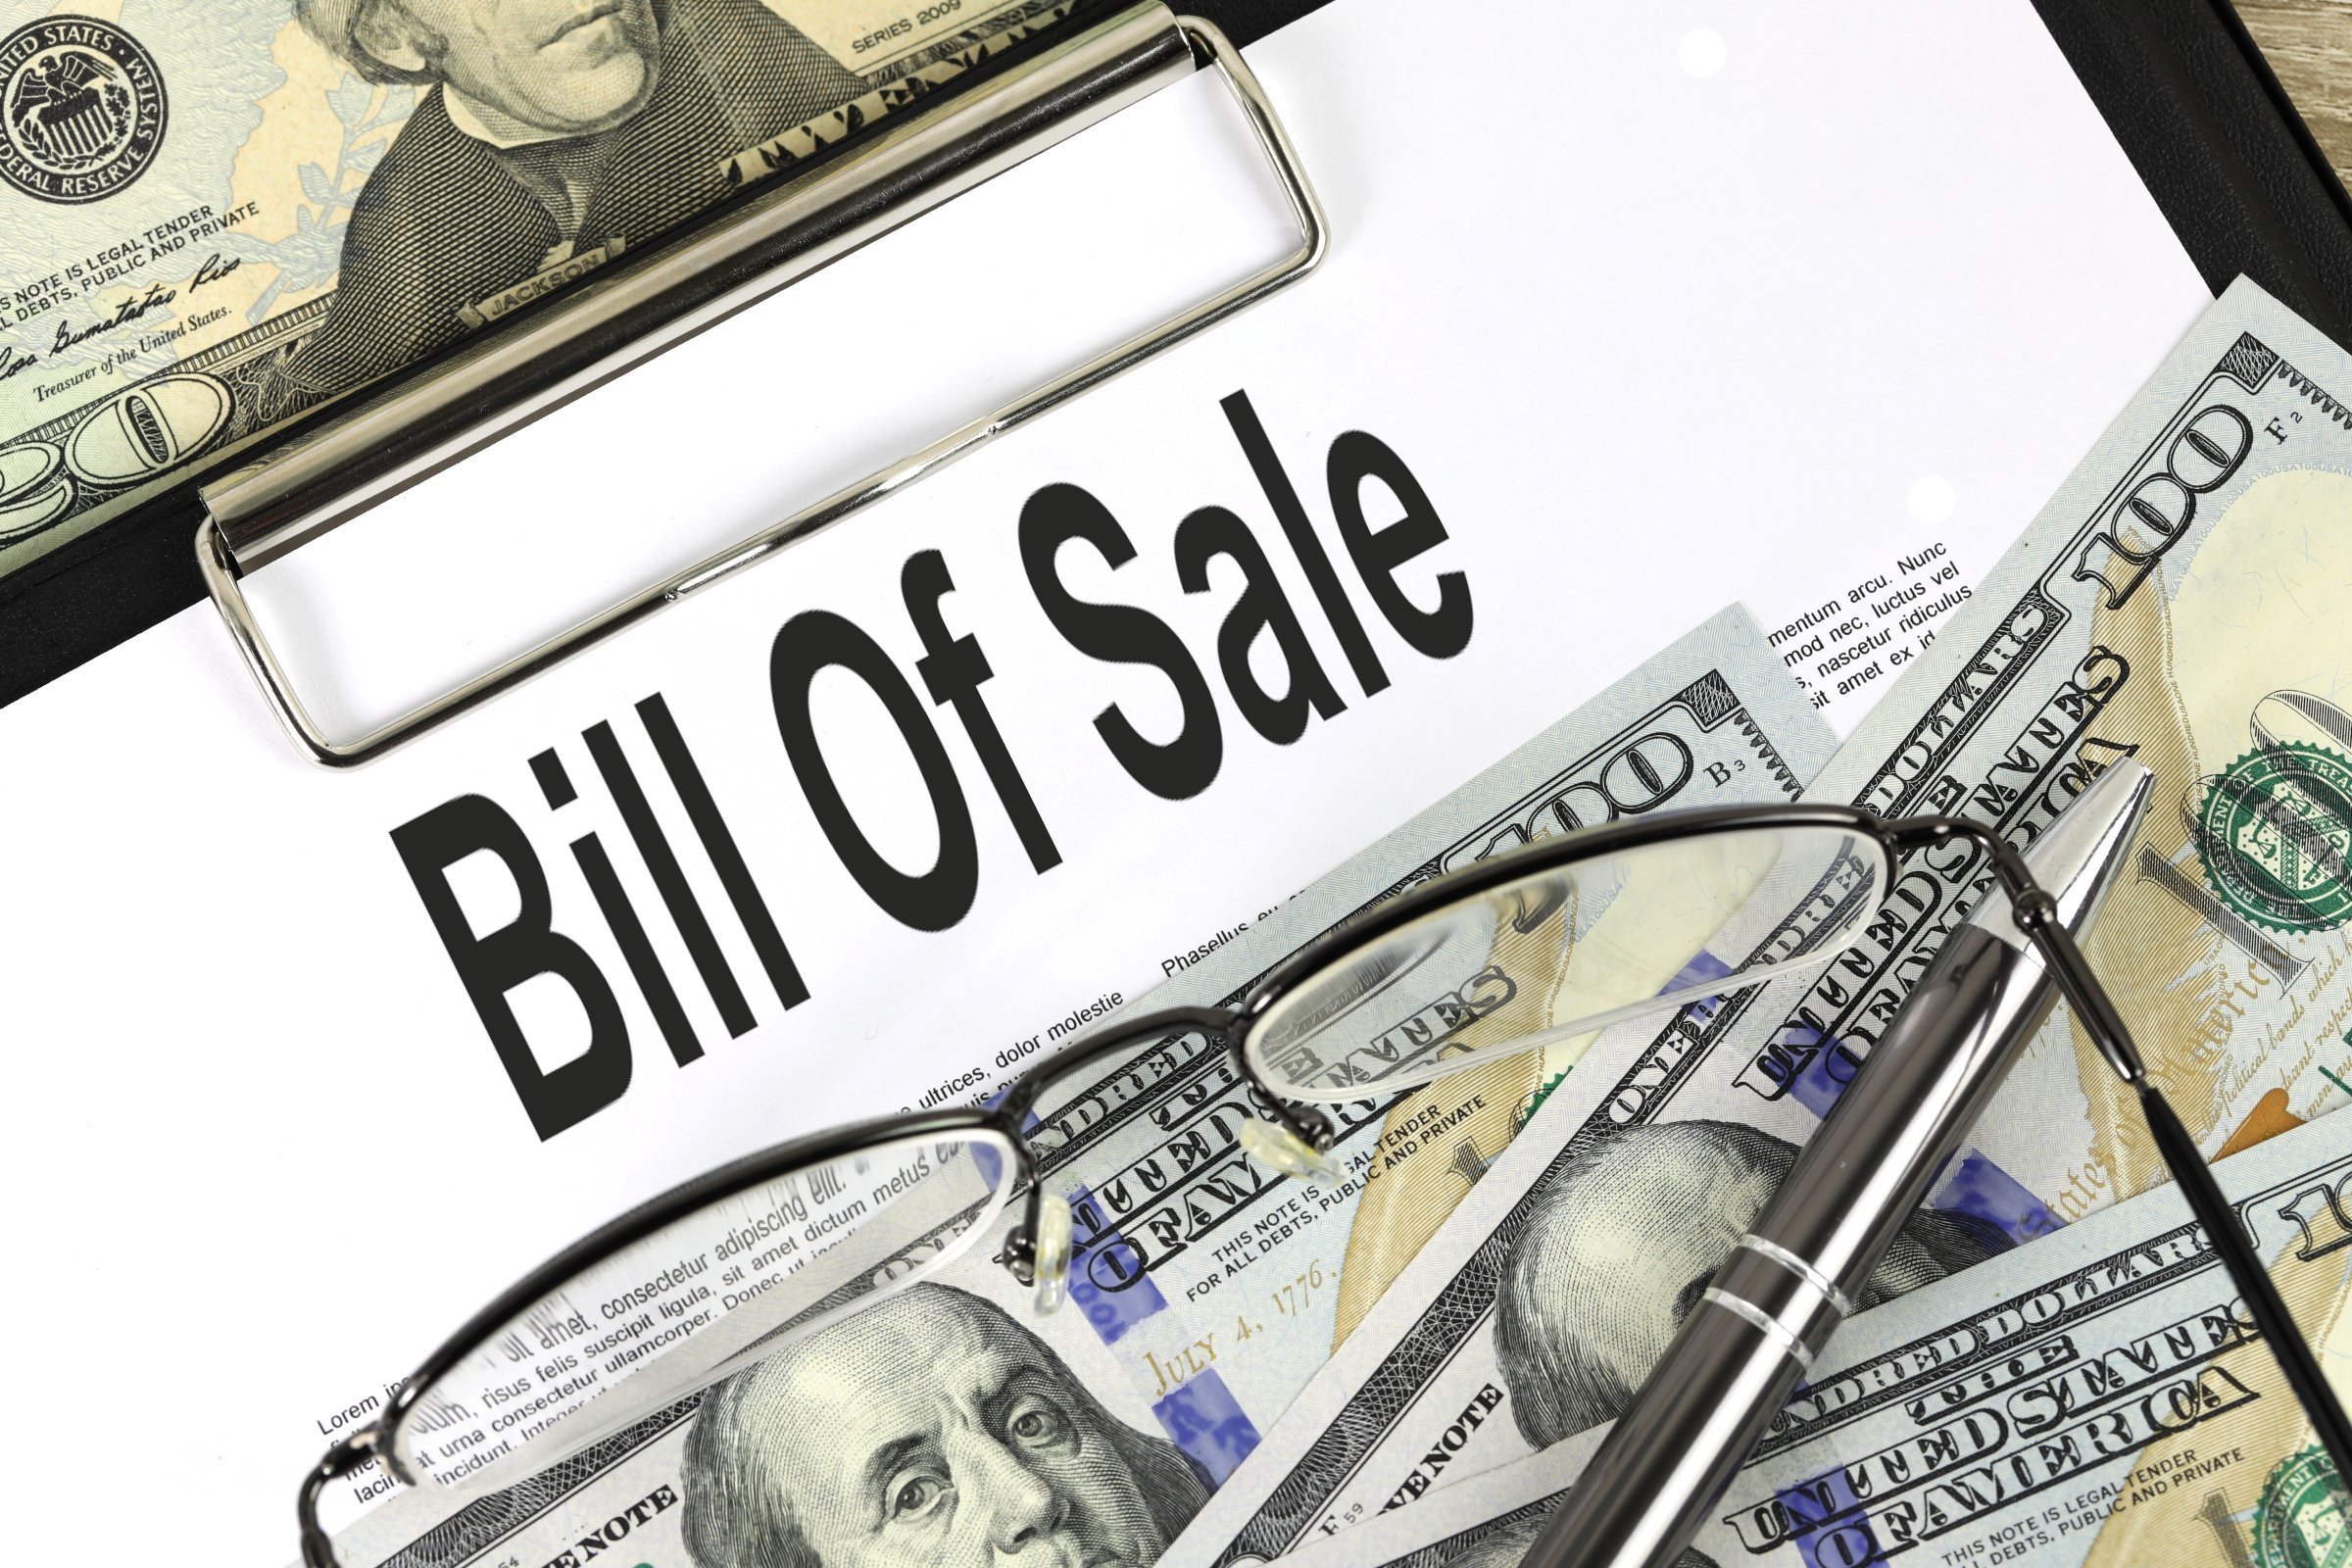 bill of sale